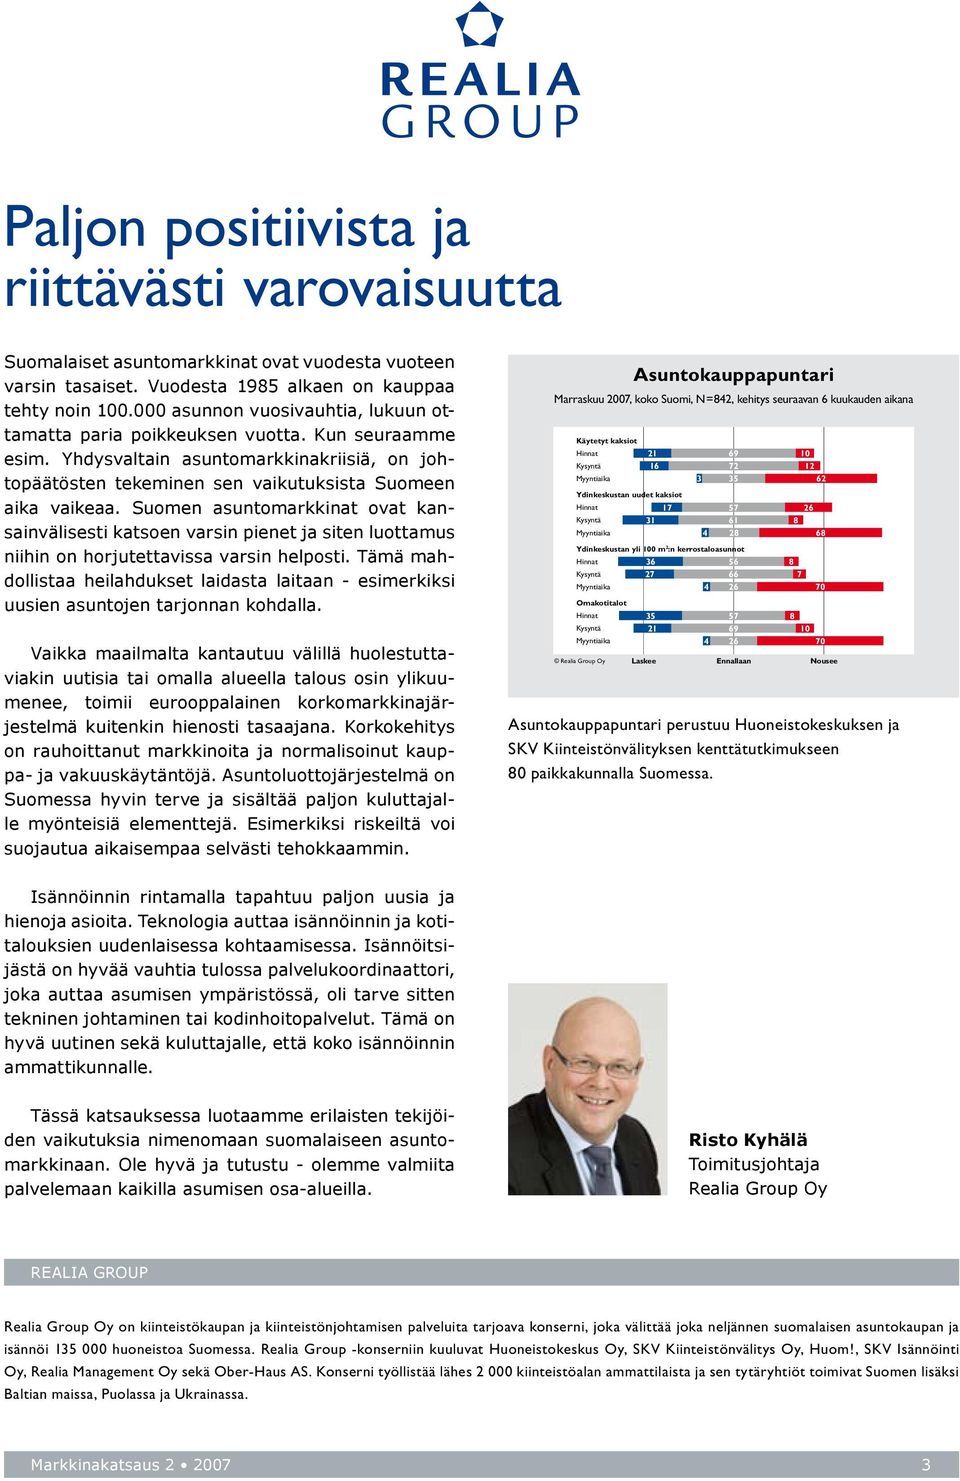 Suomen asuntomarkkinat ovat kansainvälisesti katsoen varsin pienet ja siten luottamus niihin on horjutettavissa varsin helposti.